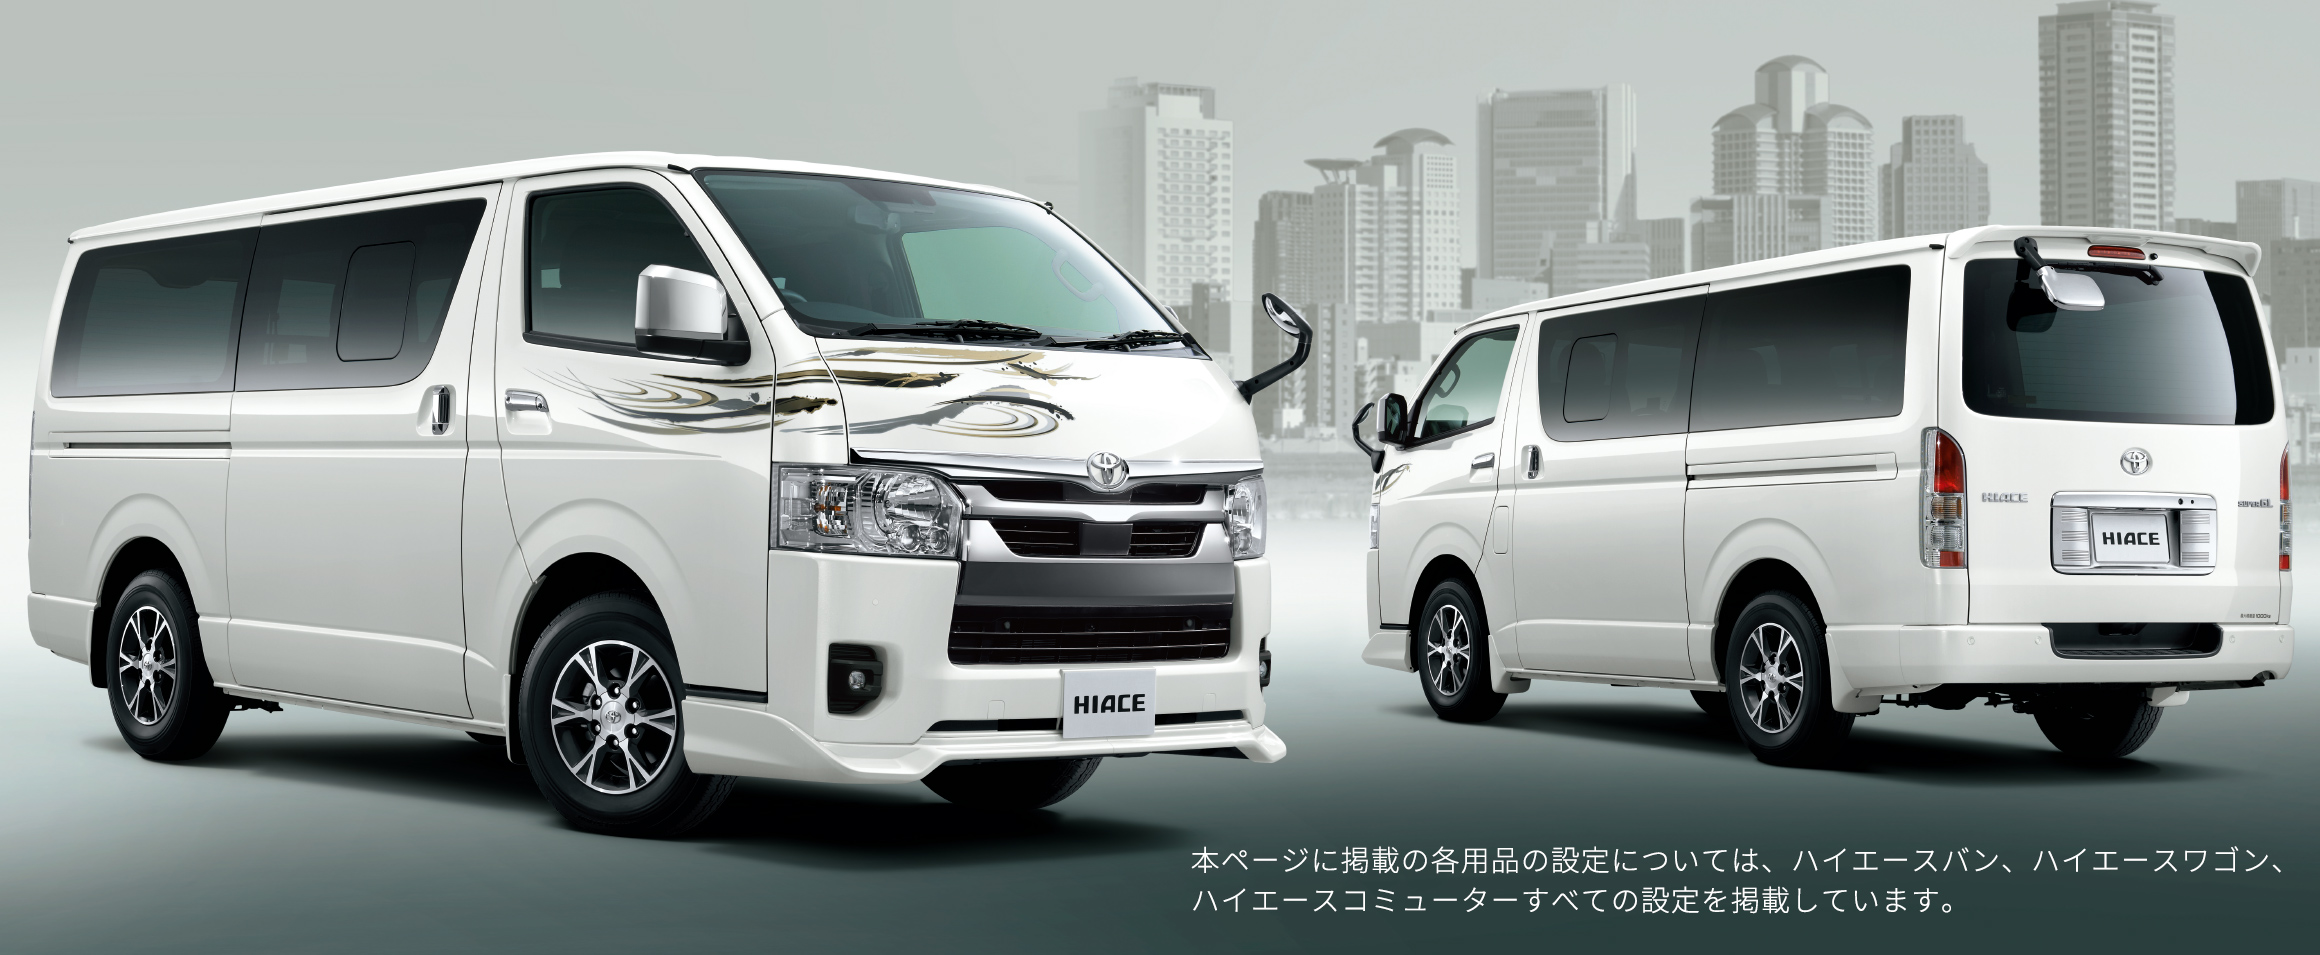 トヨタ ハイエース ワゴン オプション装備 Recommended Exterior トヨタ自動車WEBサイト